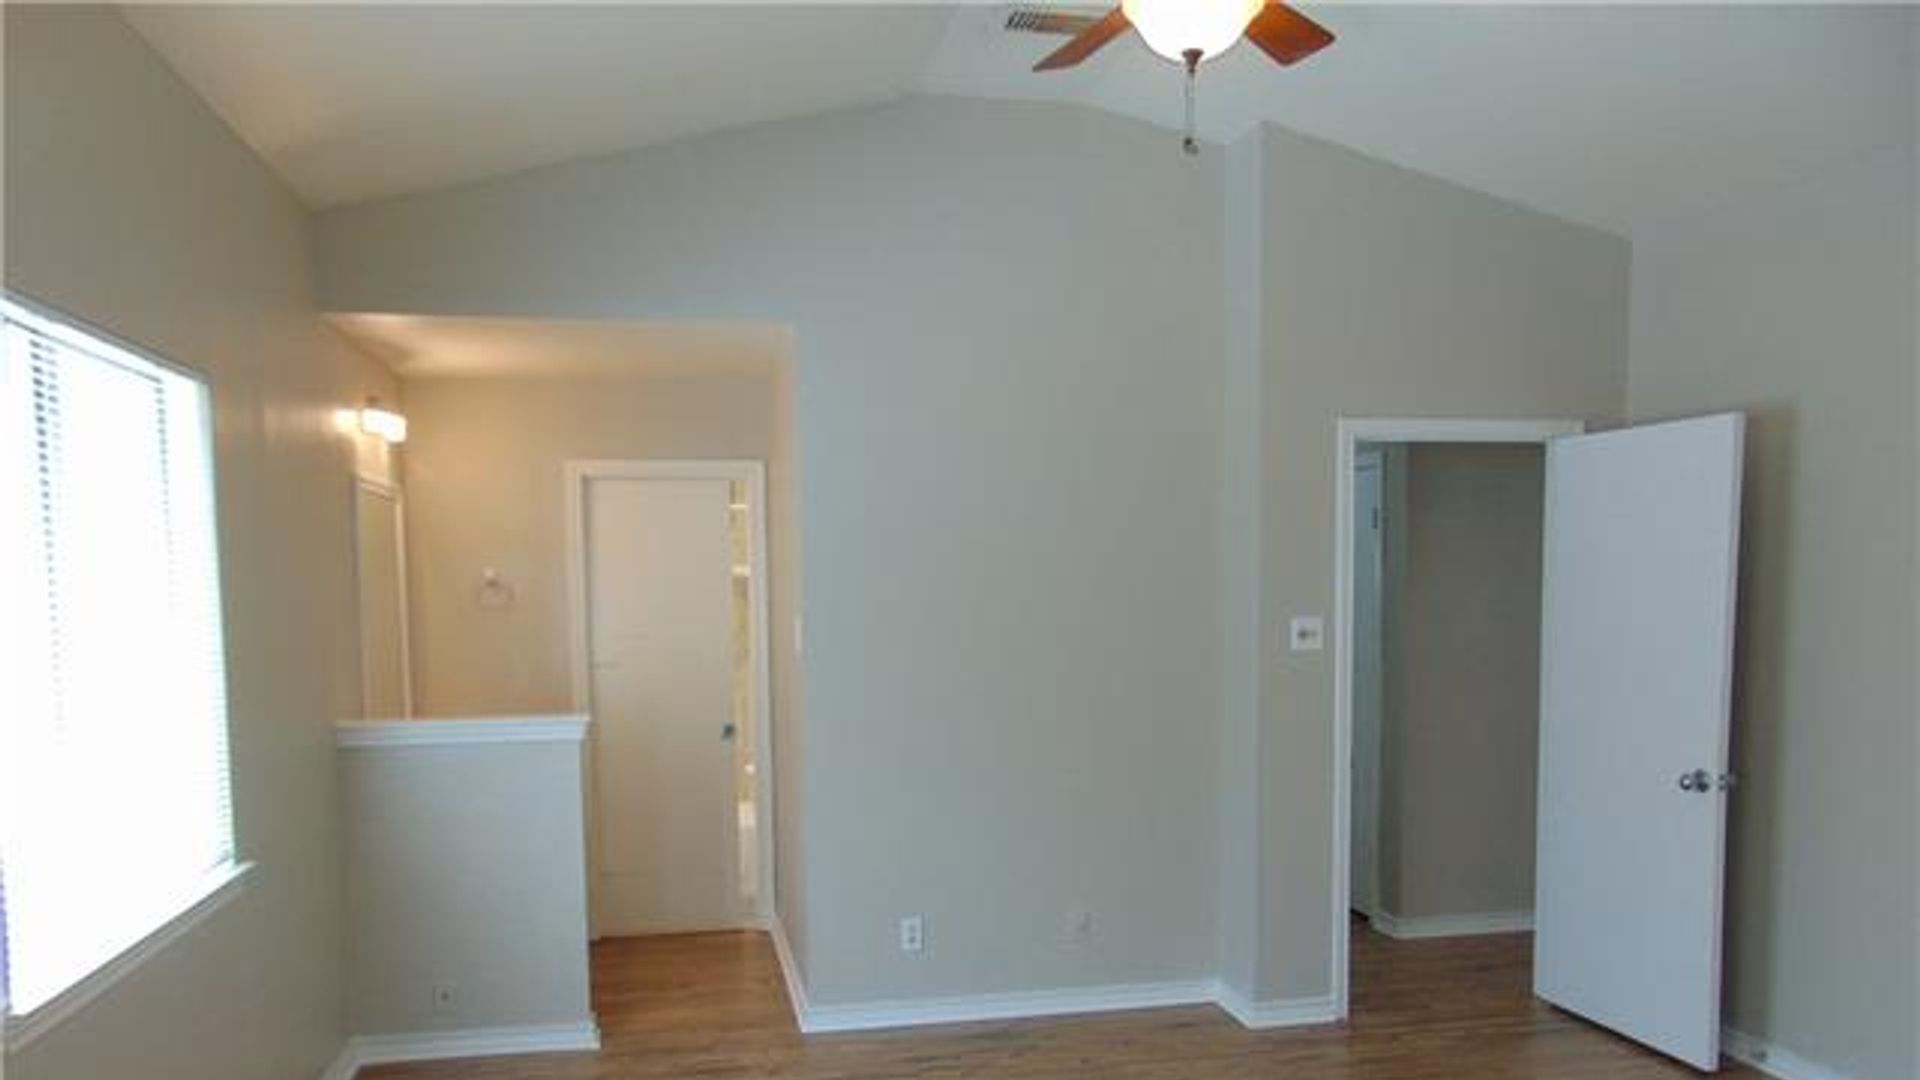 3 bedroom duplex at 235 Mooring Circle, Lakeway, TX 78734